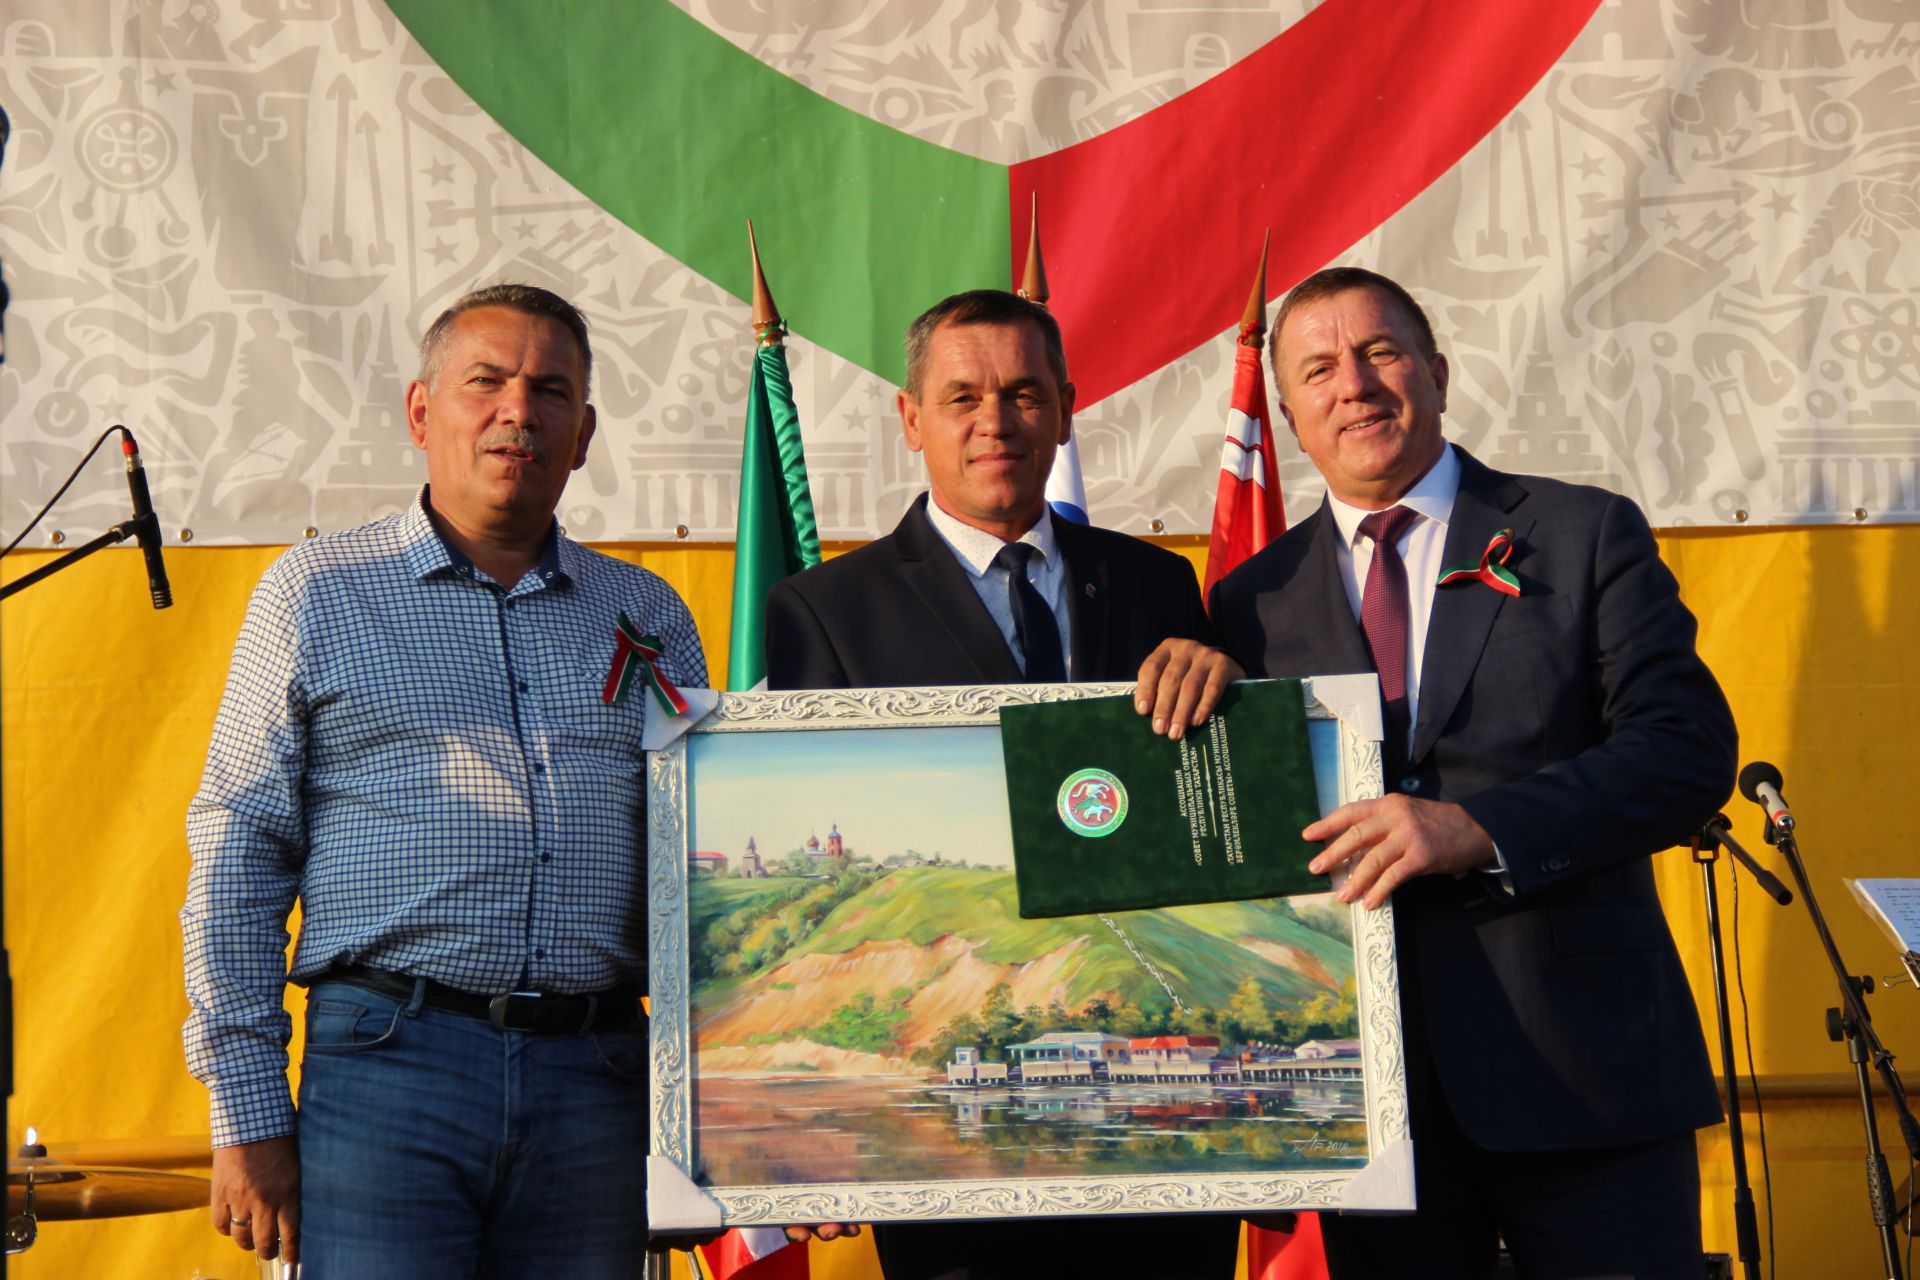 Тетюшане отметили День Республики Татарстан и День города